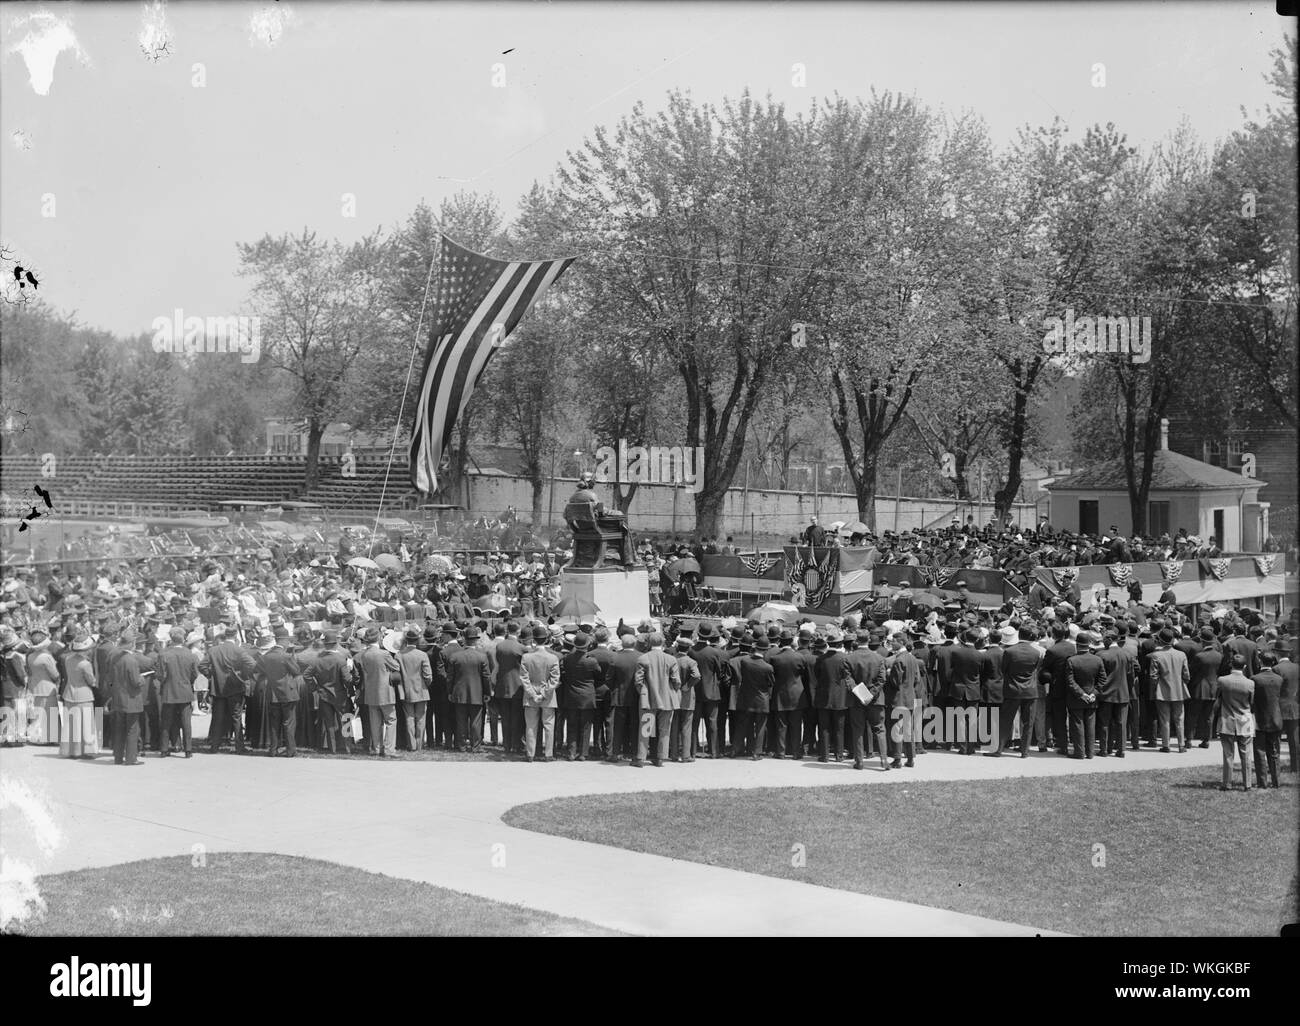 Photographie de la foule entourant la statue Bishop John Carroll à l'Université de Georgetown au cours de son inauguration le 4 mai 1912 Banque D'Images